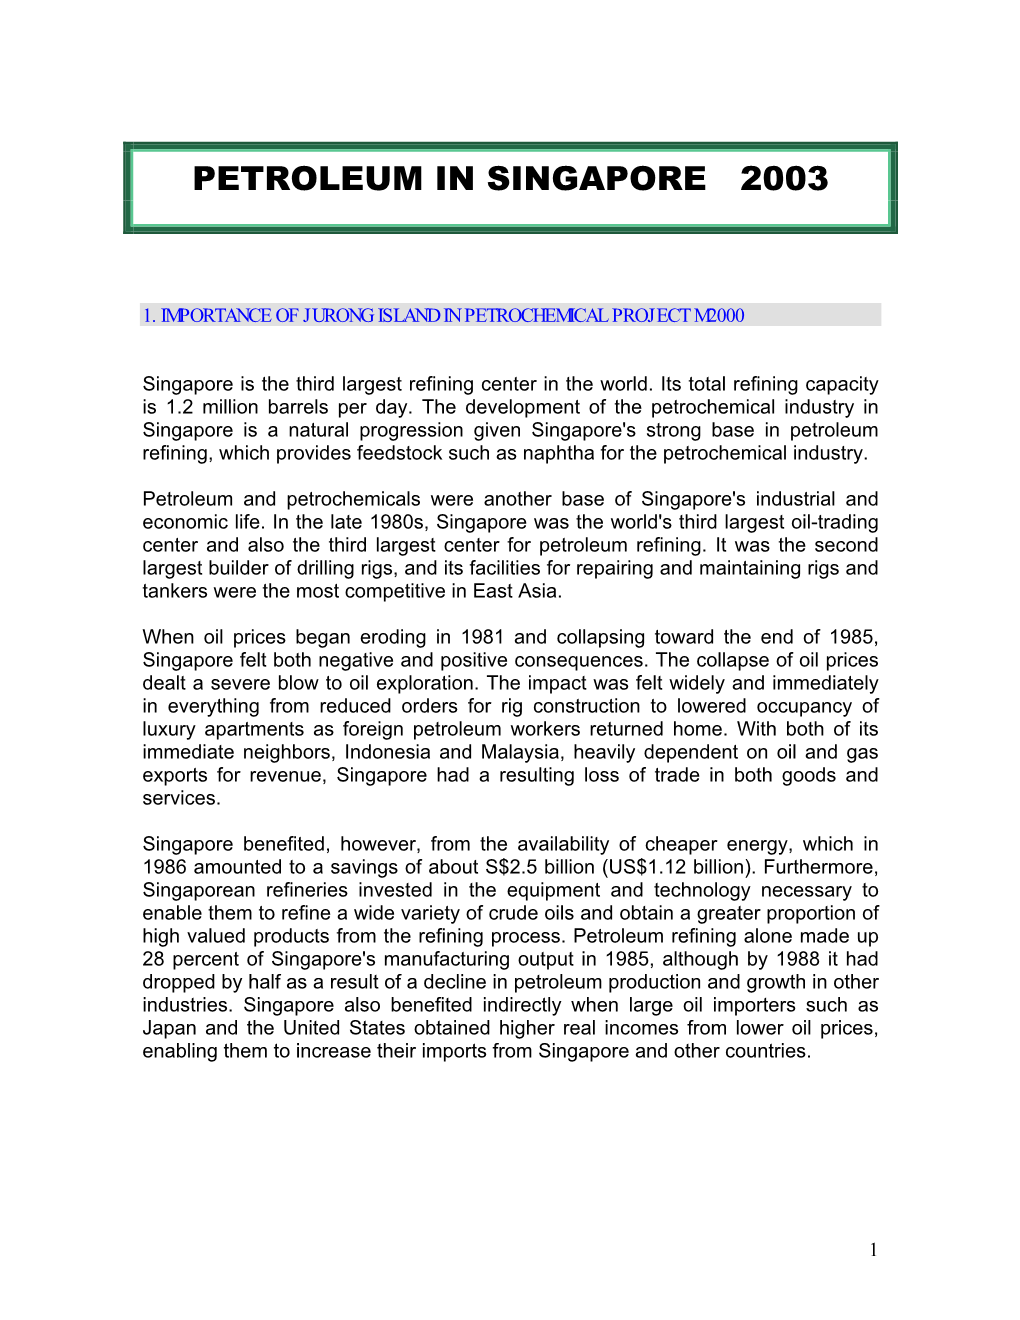 Petroleum in Singapore 2003